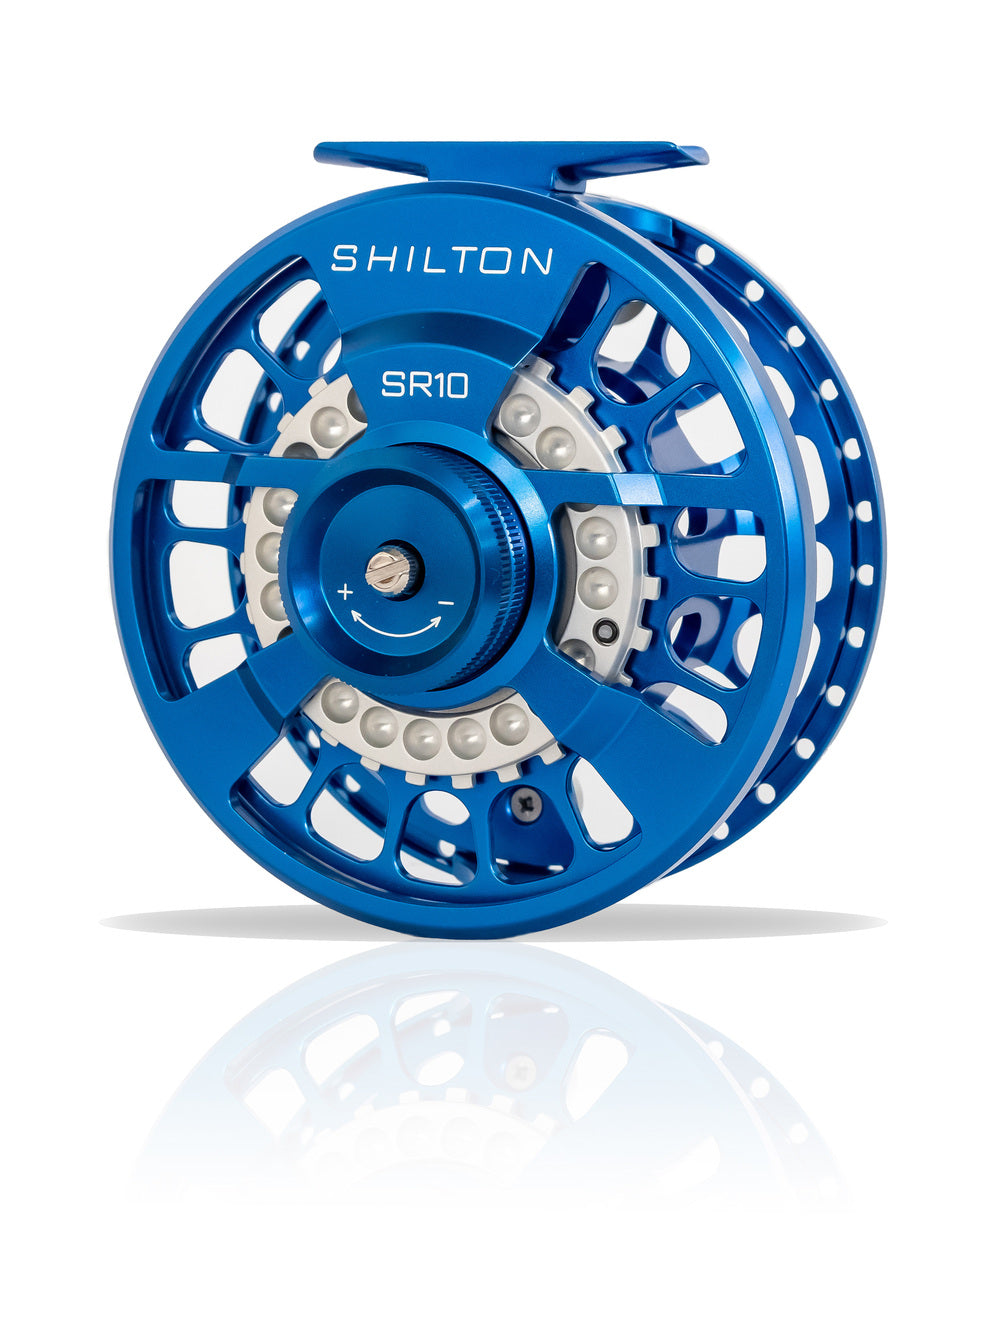 Shilton SR10 Blue Reel (10-11wt) - NEW!